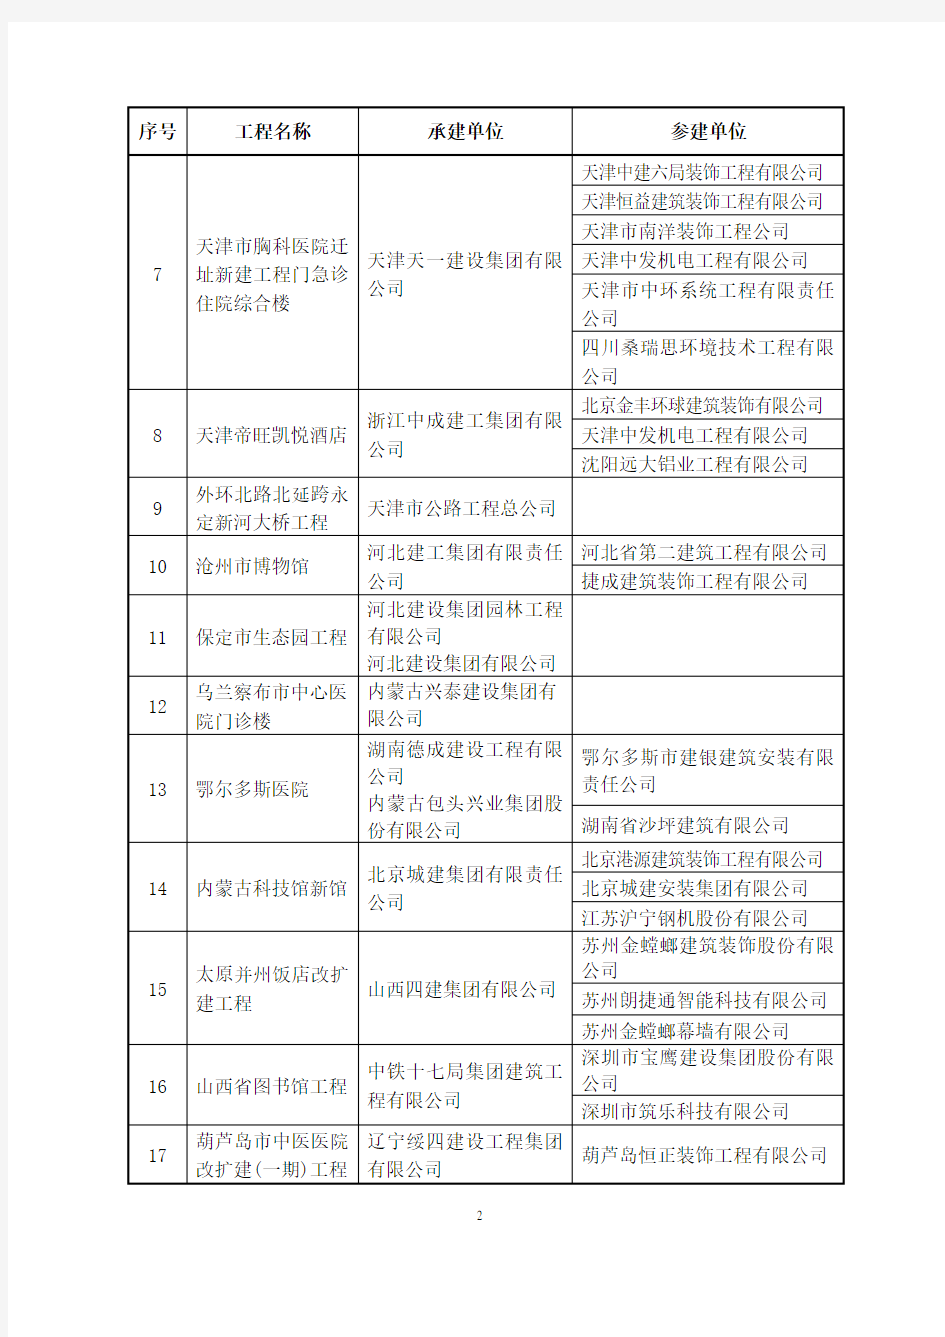 关于颁发2014～2015年度中国建设工程鲁班奖(国家优质工程)获奖名单